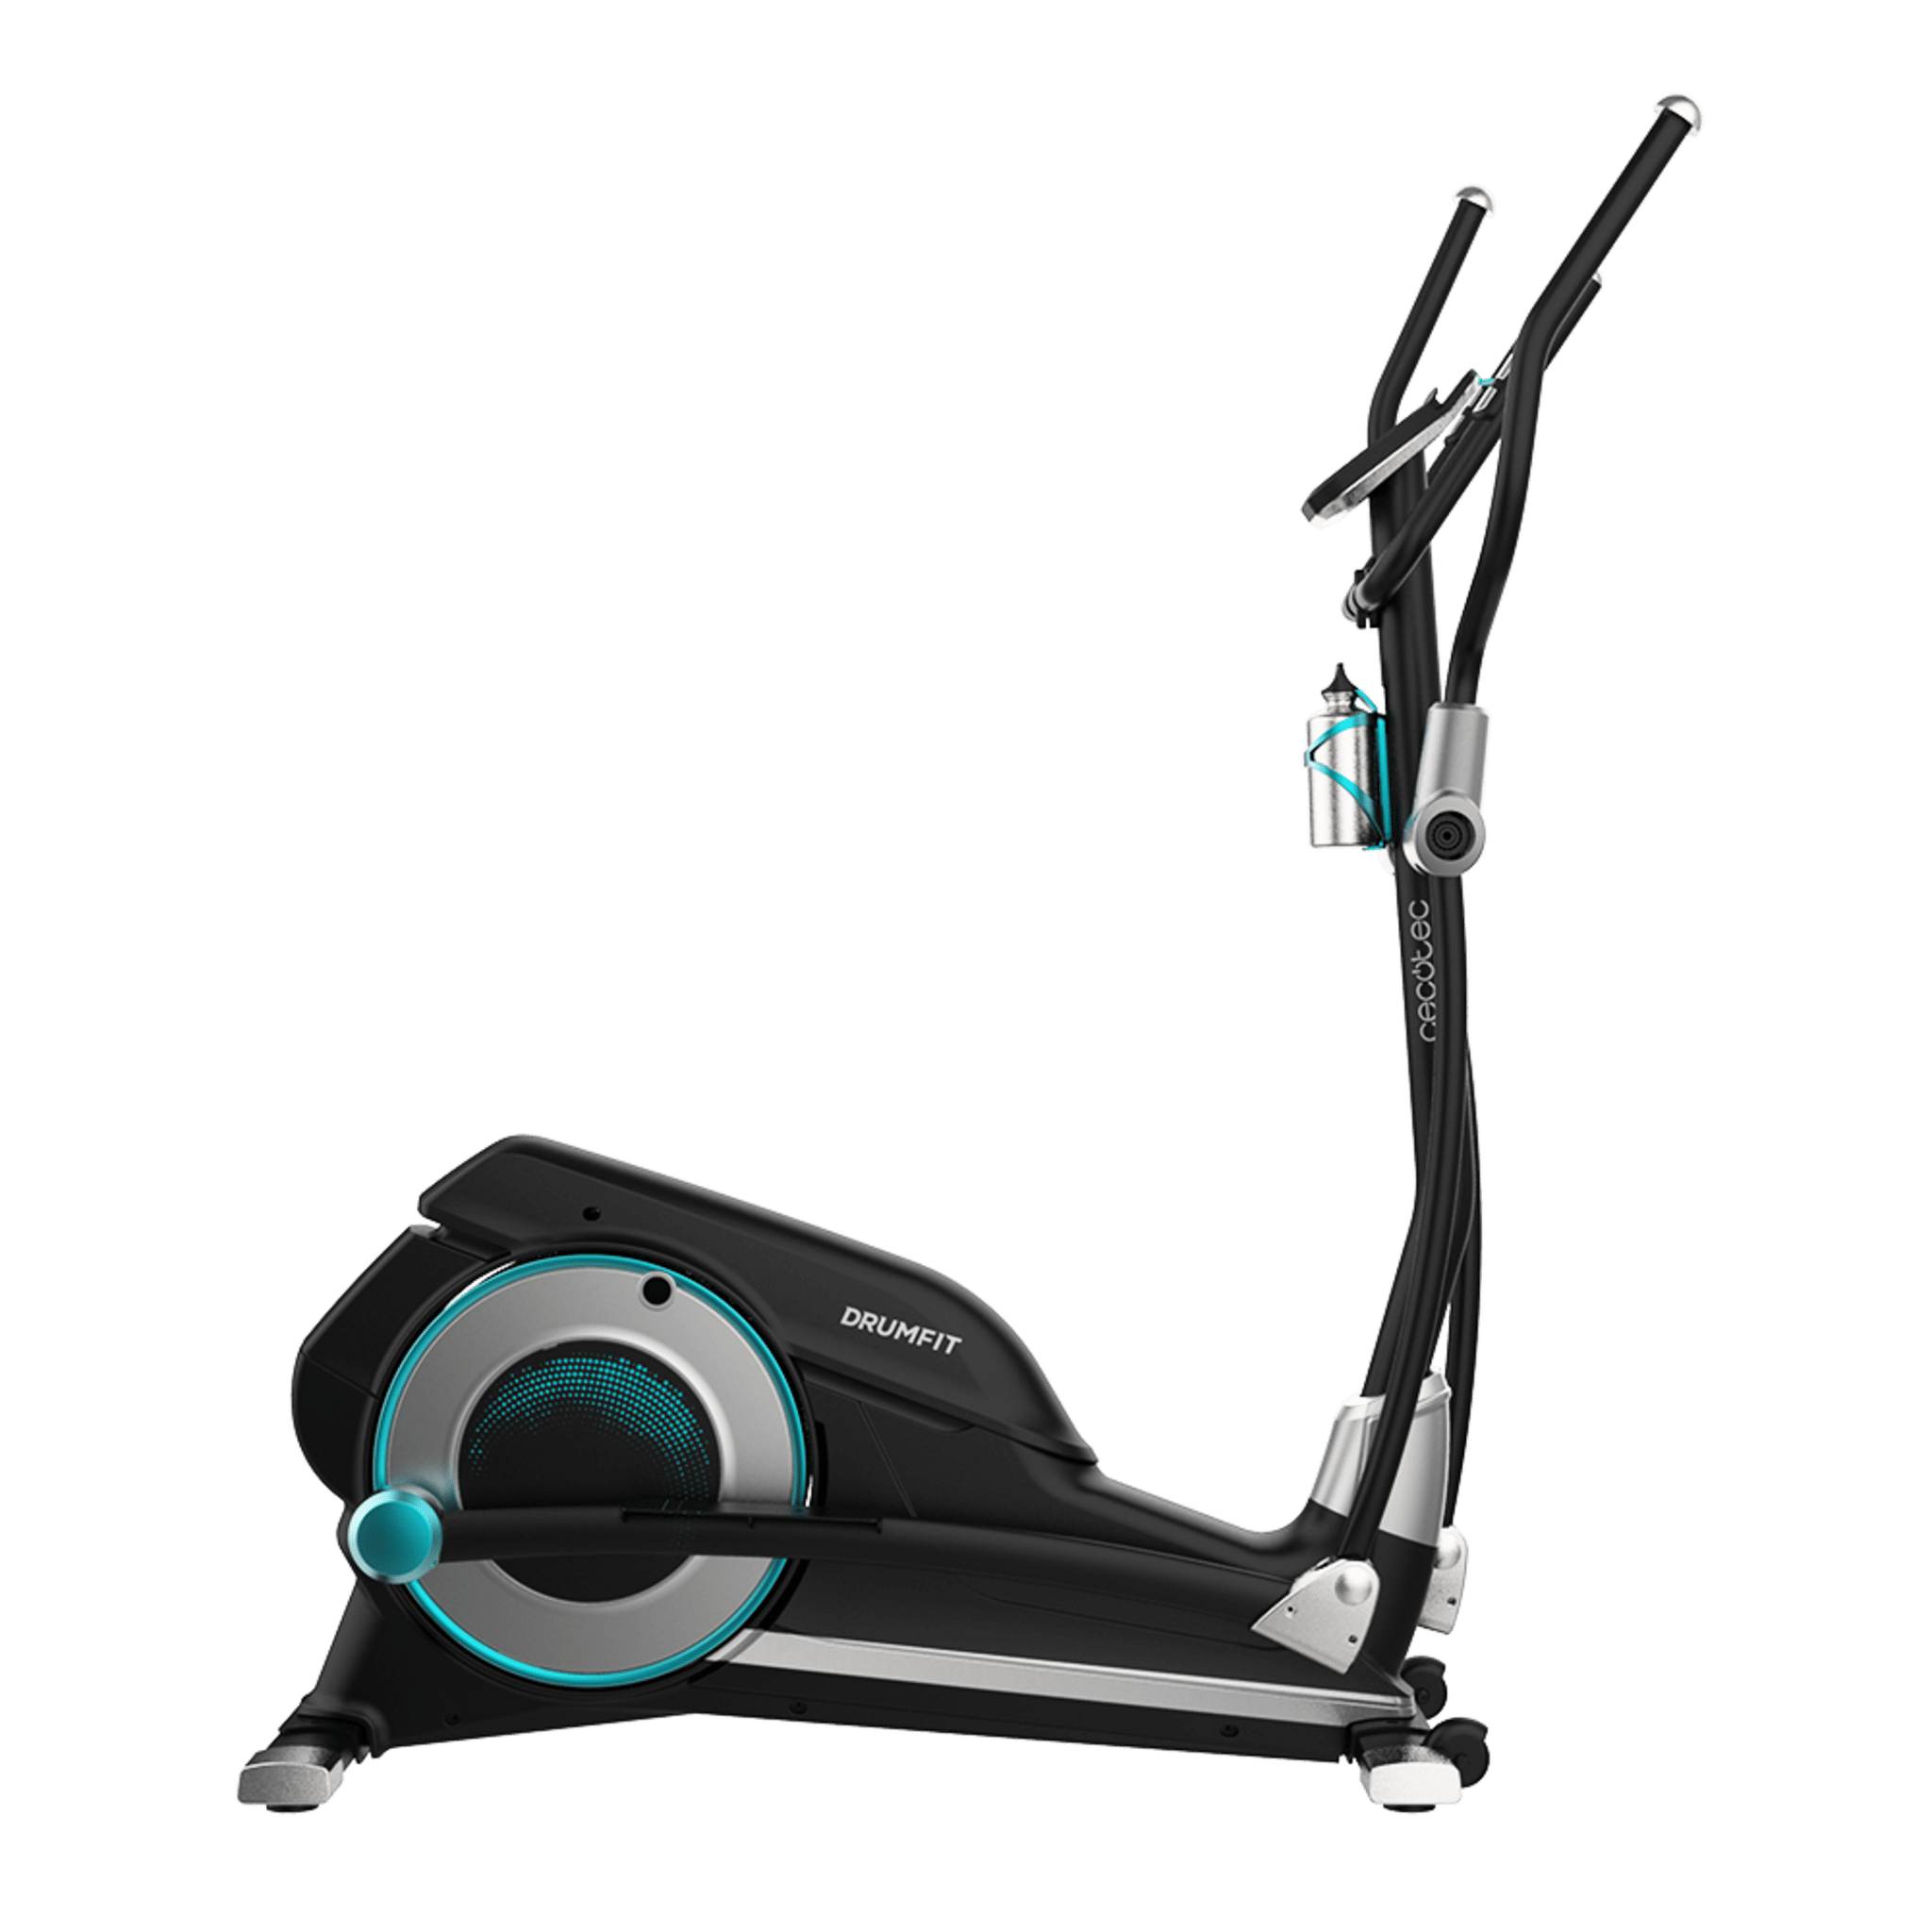 Cyclette ellittica DrumFit Elliptical 9000 Eir Pro. Resistenza magnetica regolabile con motore, monitor LCD con supporto per dispositivi, ruote di trasporto, borraccia e portaborraccia